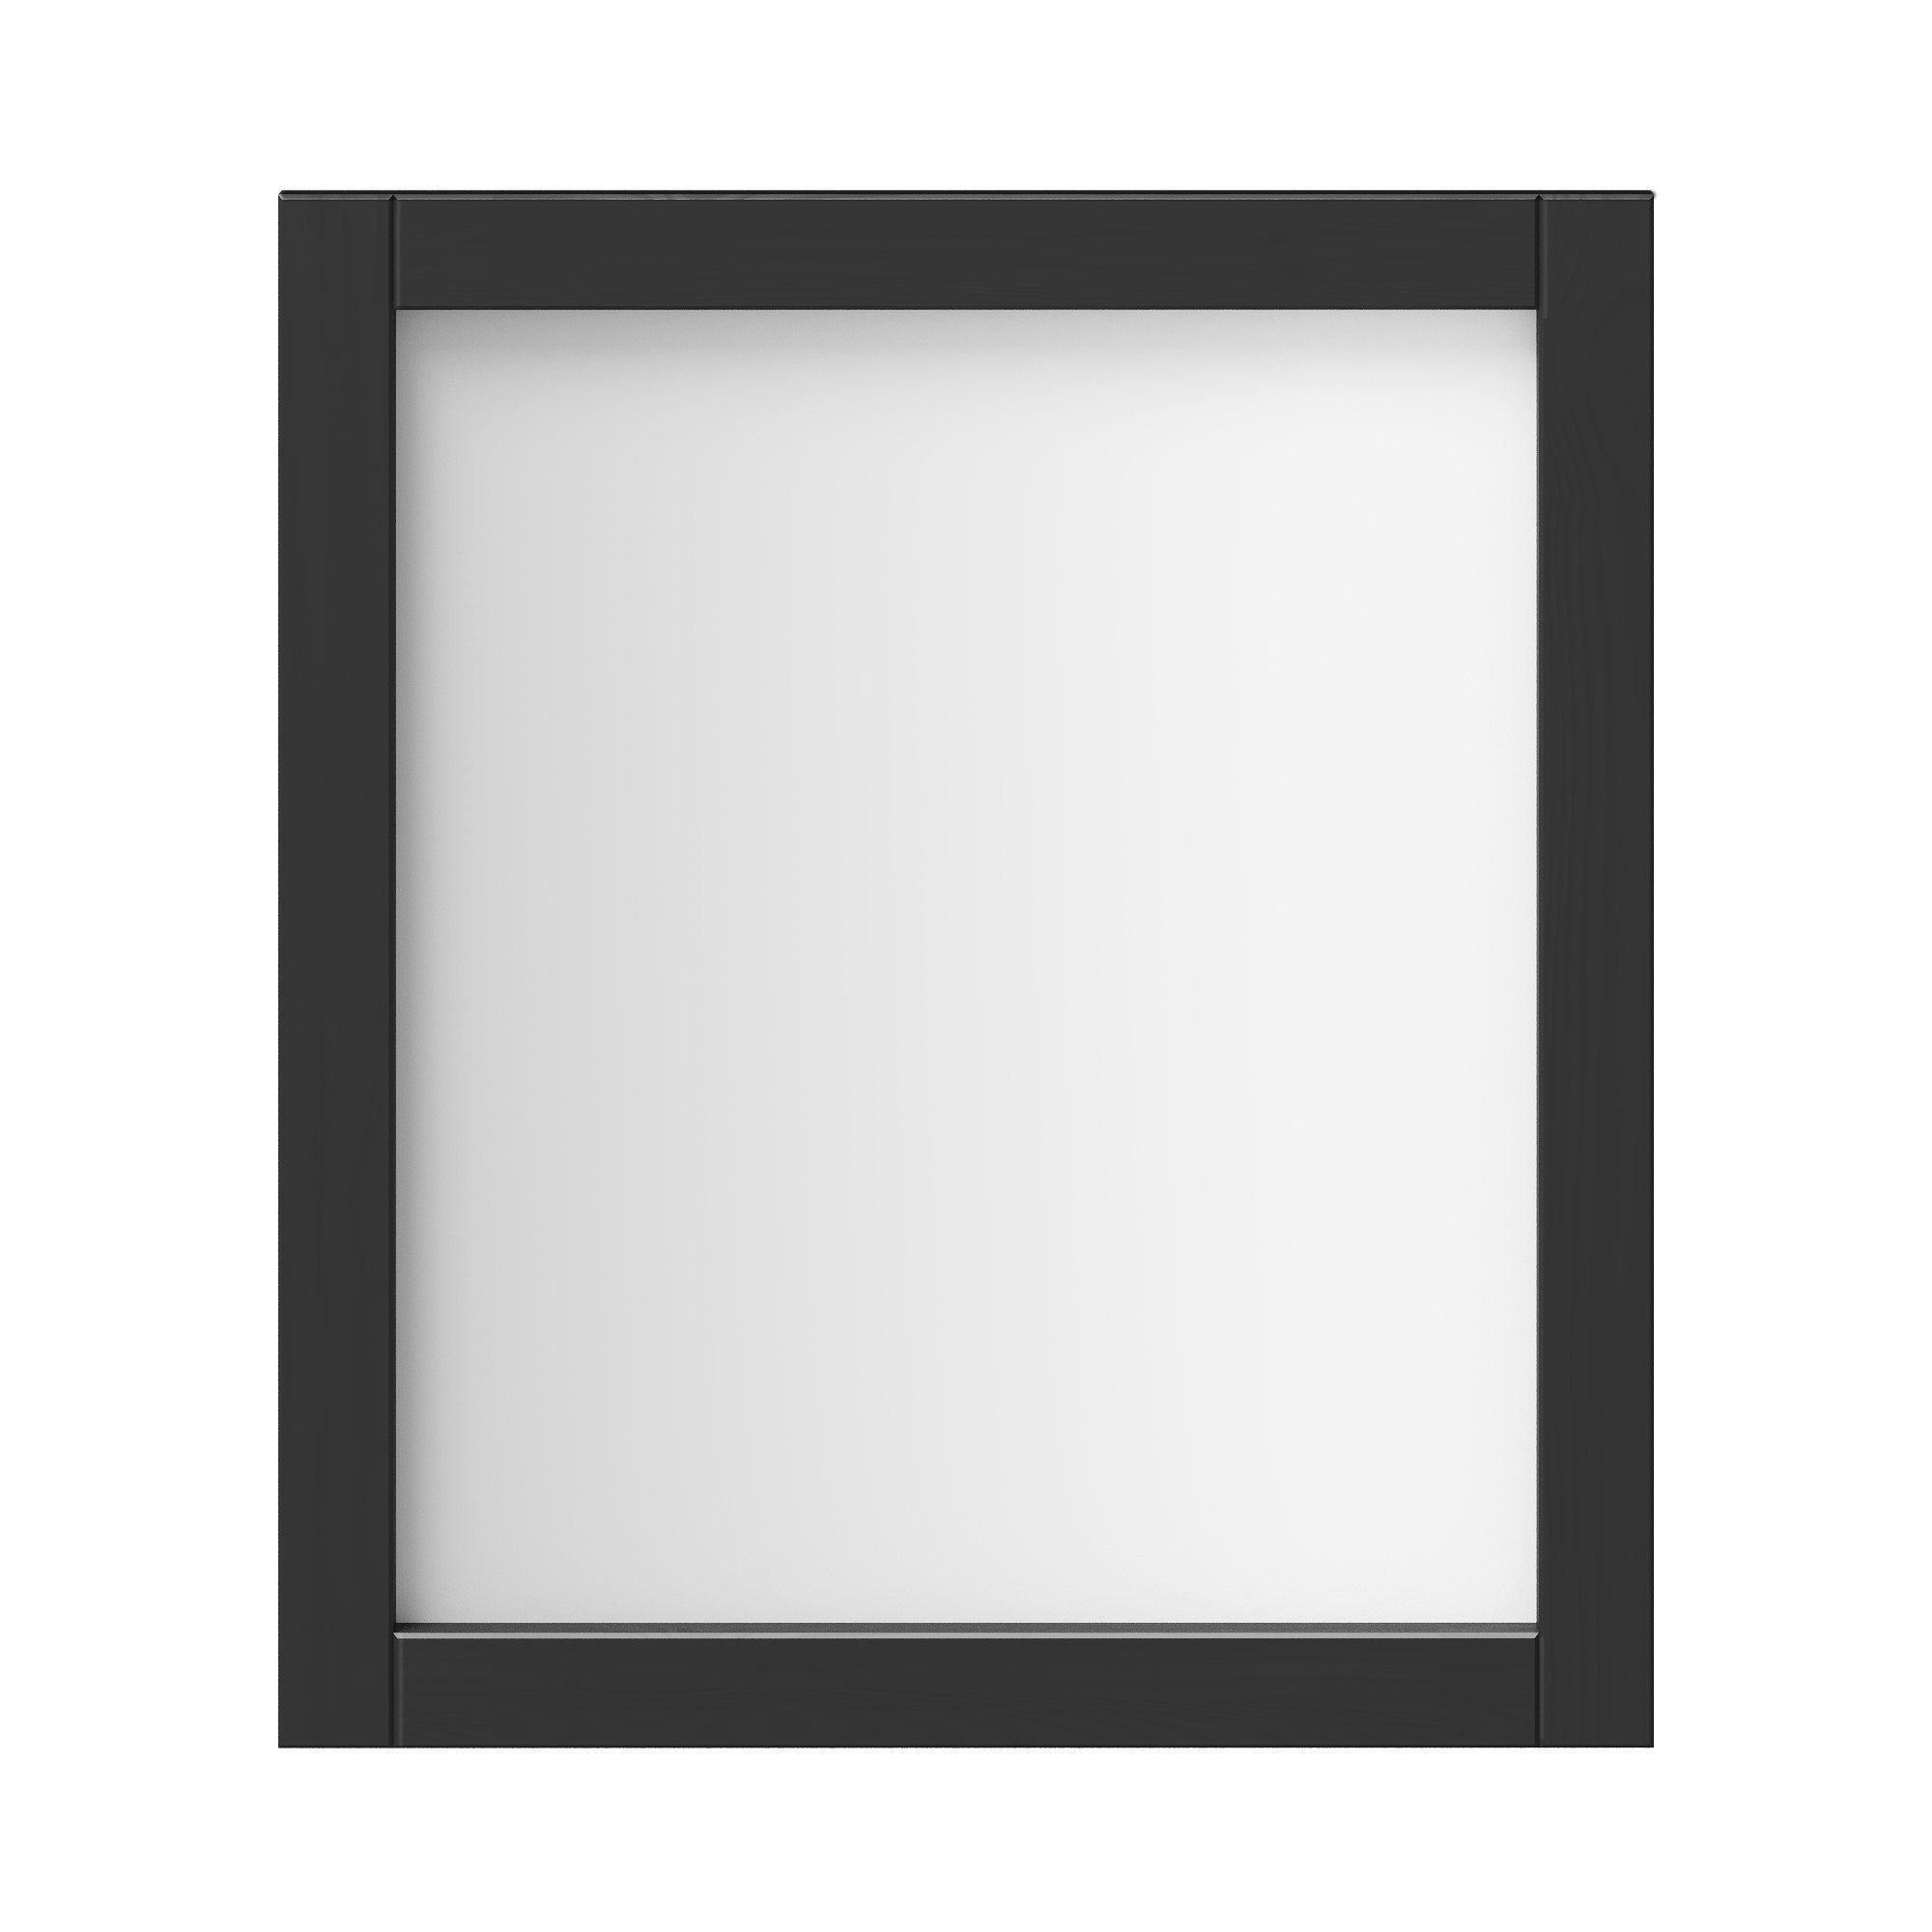 Woodroom Spiegel Valencia, Kiefer massiv lackiert, BxHxT 62x70x3 cm Schwarz | schwarz